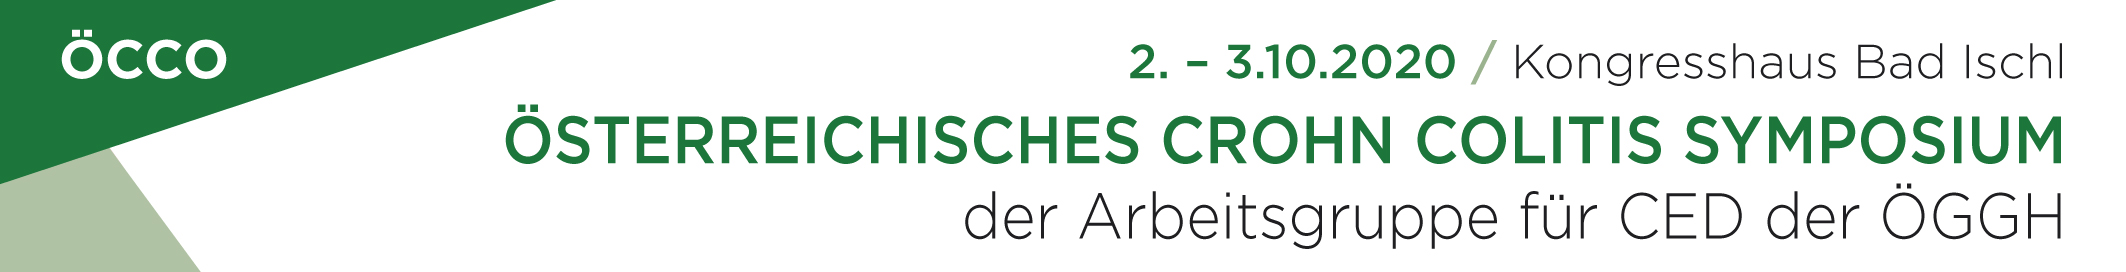 Österreichisches Crohn Colitis Symposium der Arbeitsgruppe für CED der ÖGGH